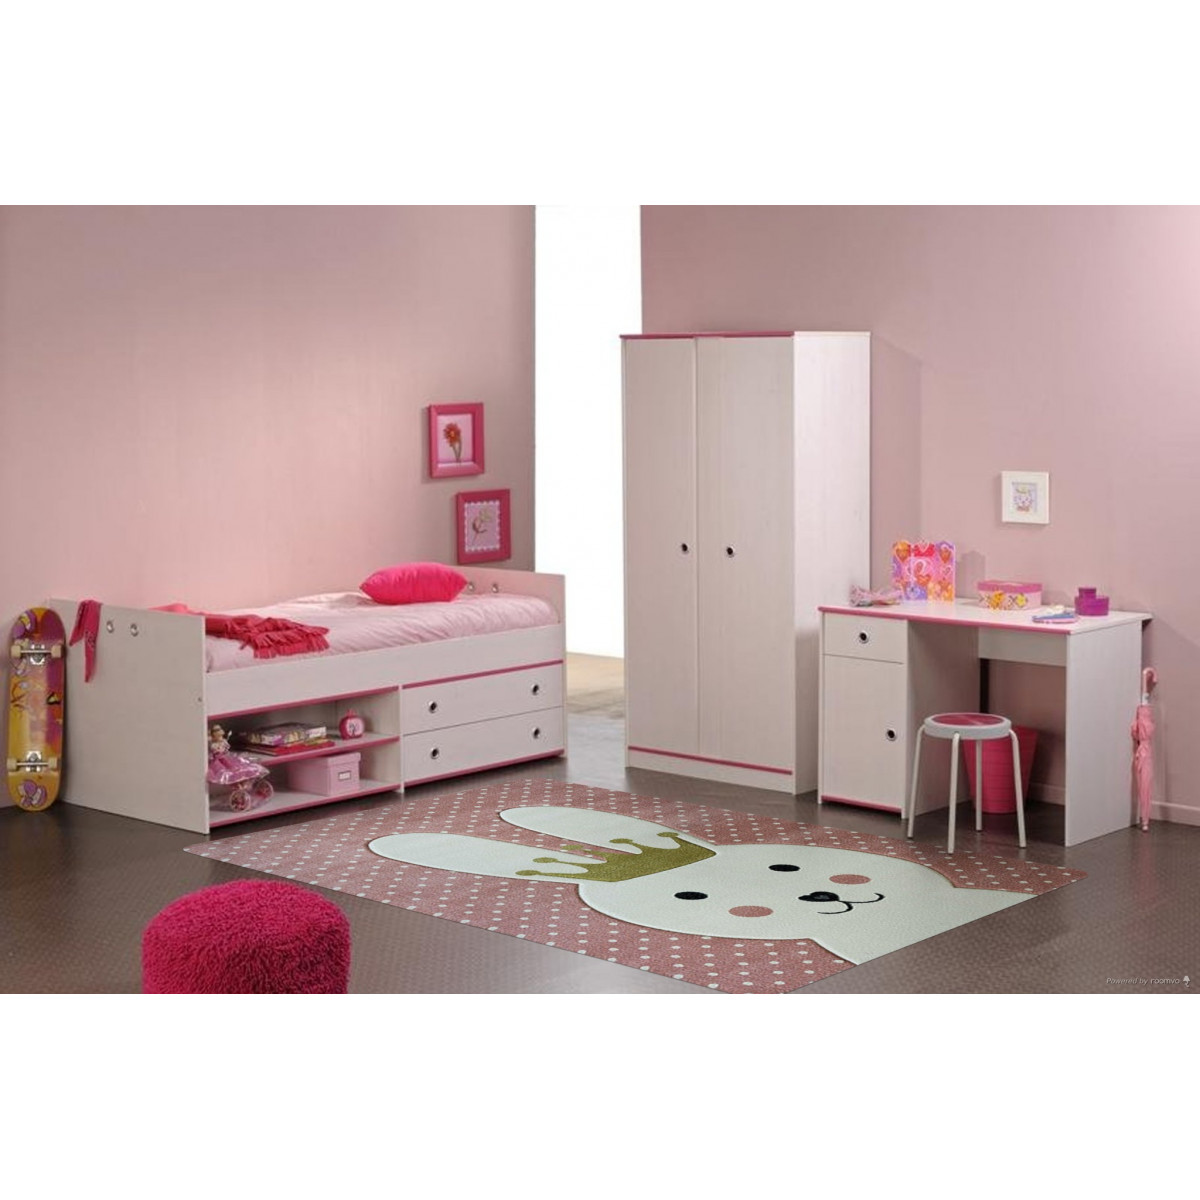 Dětský kusový koberec Smart Kids 22414 Pink